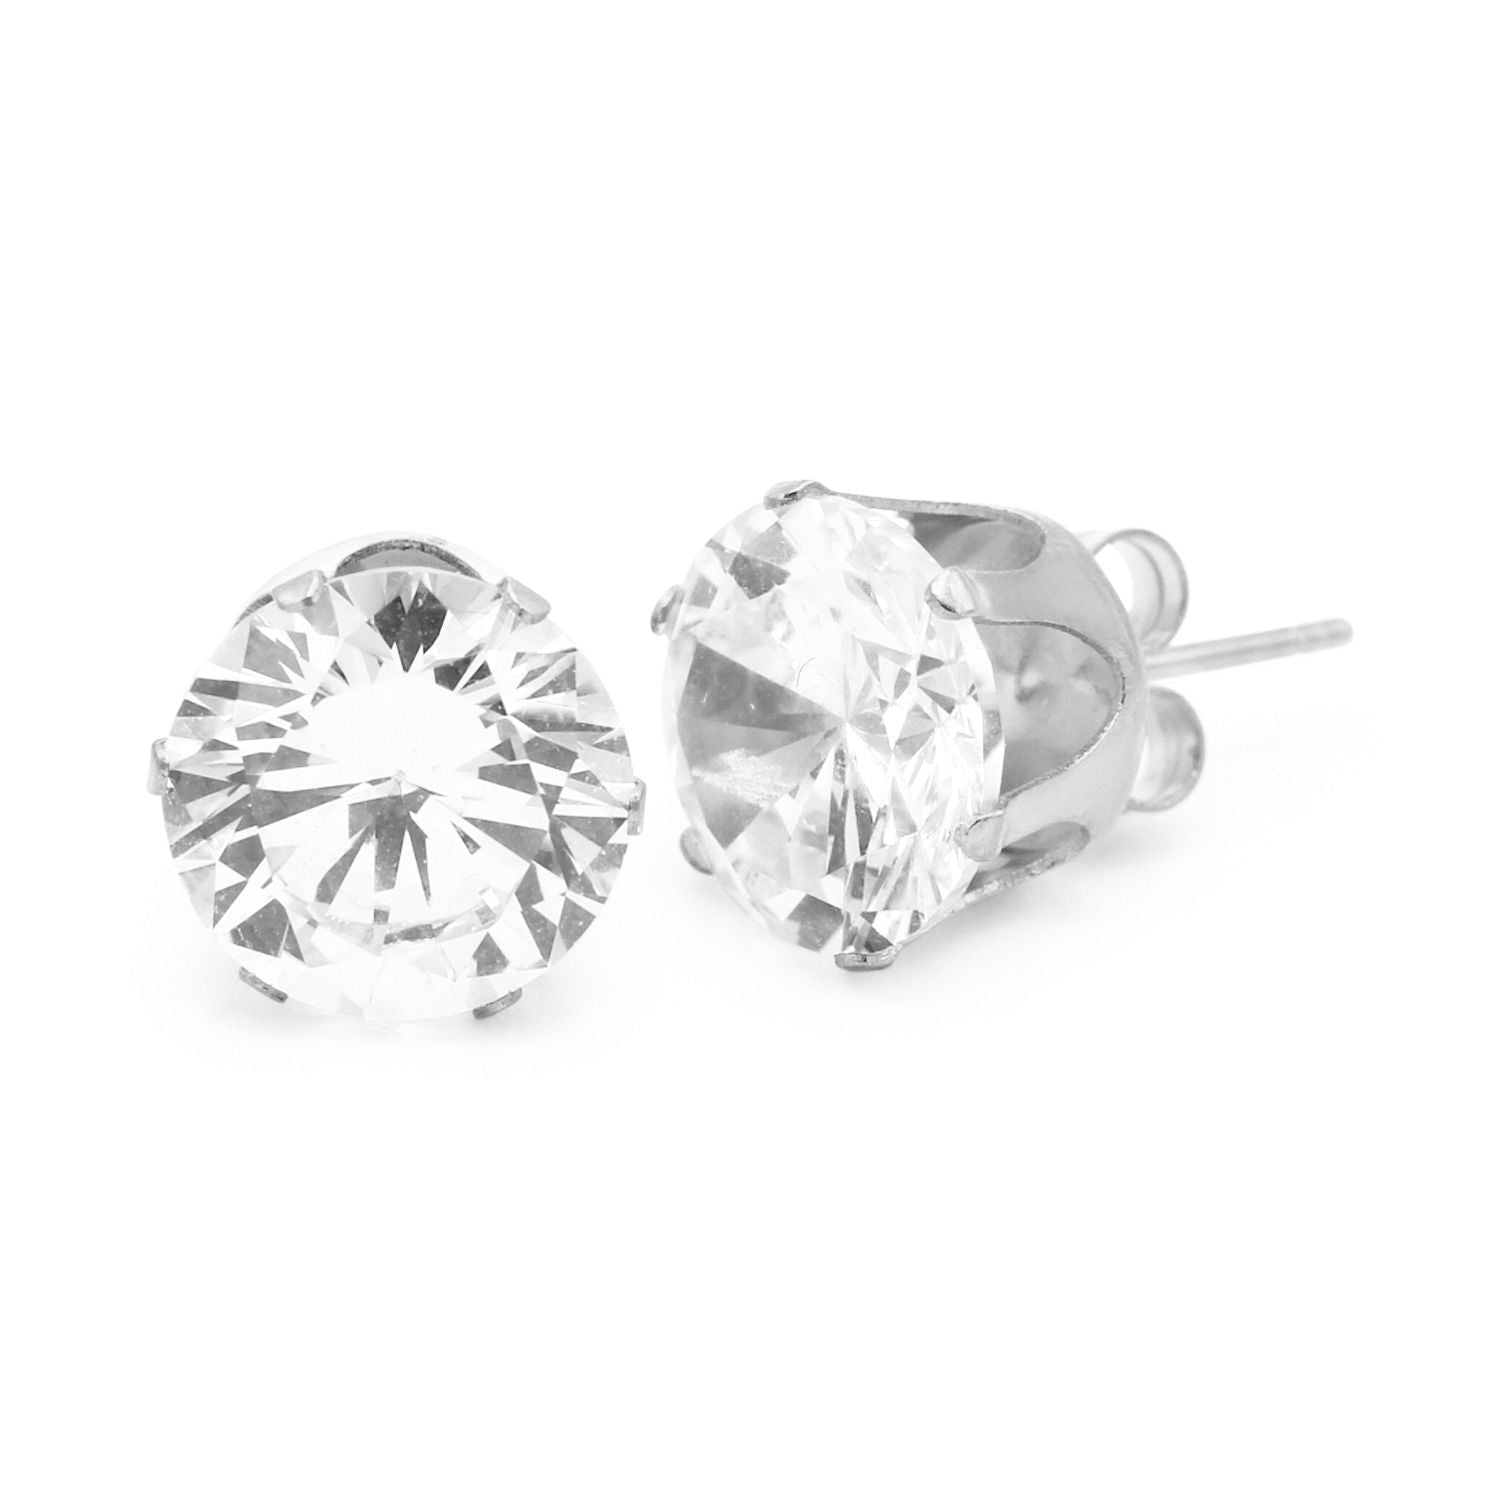 Cubic Zirconia Round Stud Earrings Stainless Steel Silver Jewelry Men Women